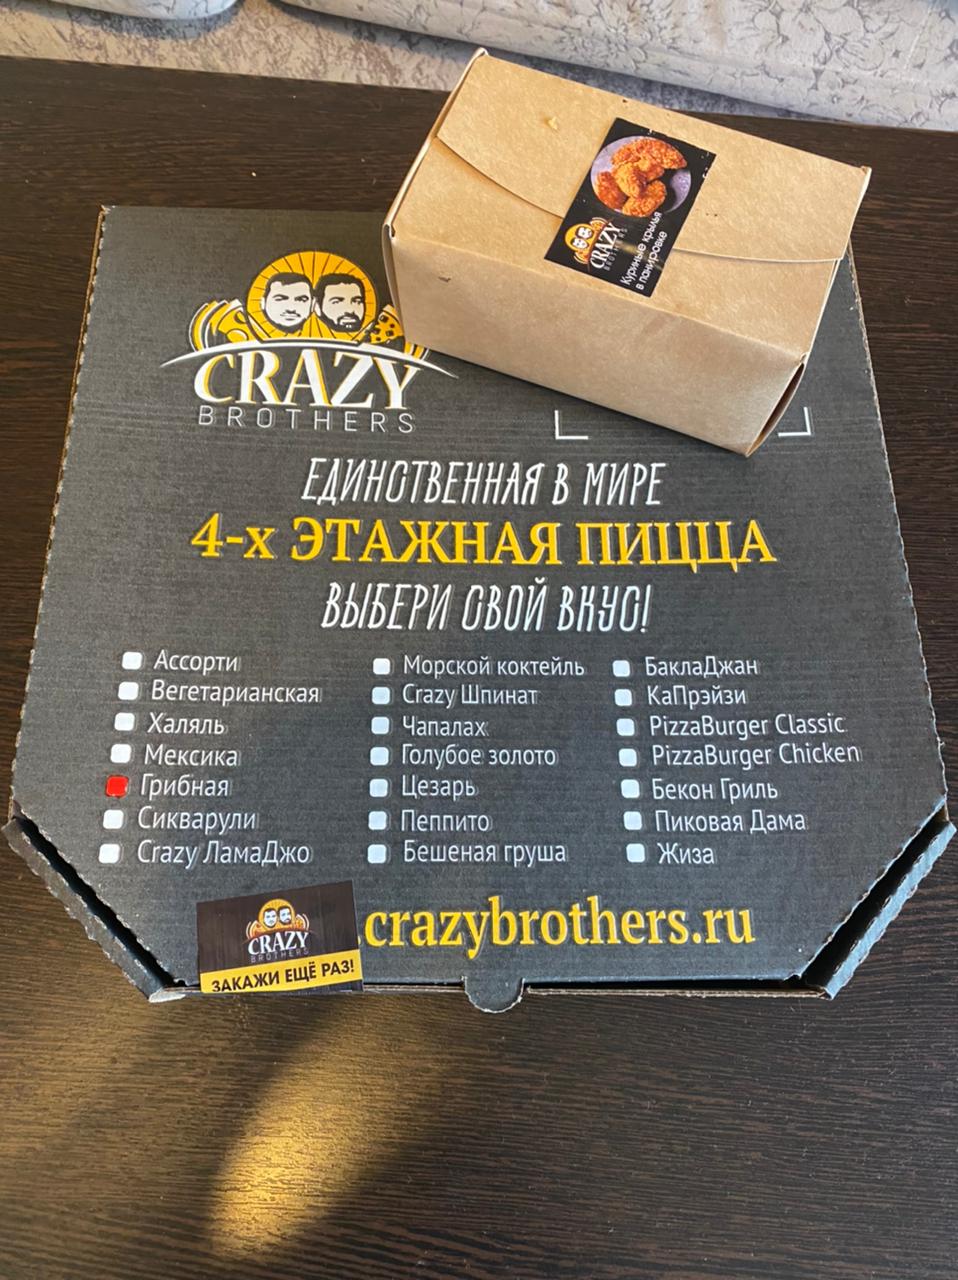 Crazy brothers. Пиццерия Crazy brothers. Crazy brothers меню. Пицца жиза Crazy brothers. Купон Crazy brothers.